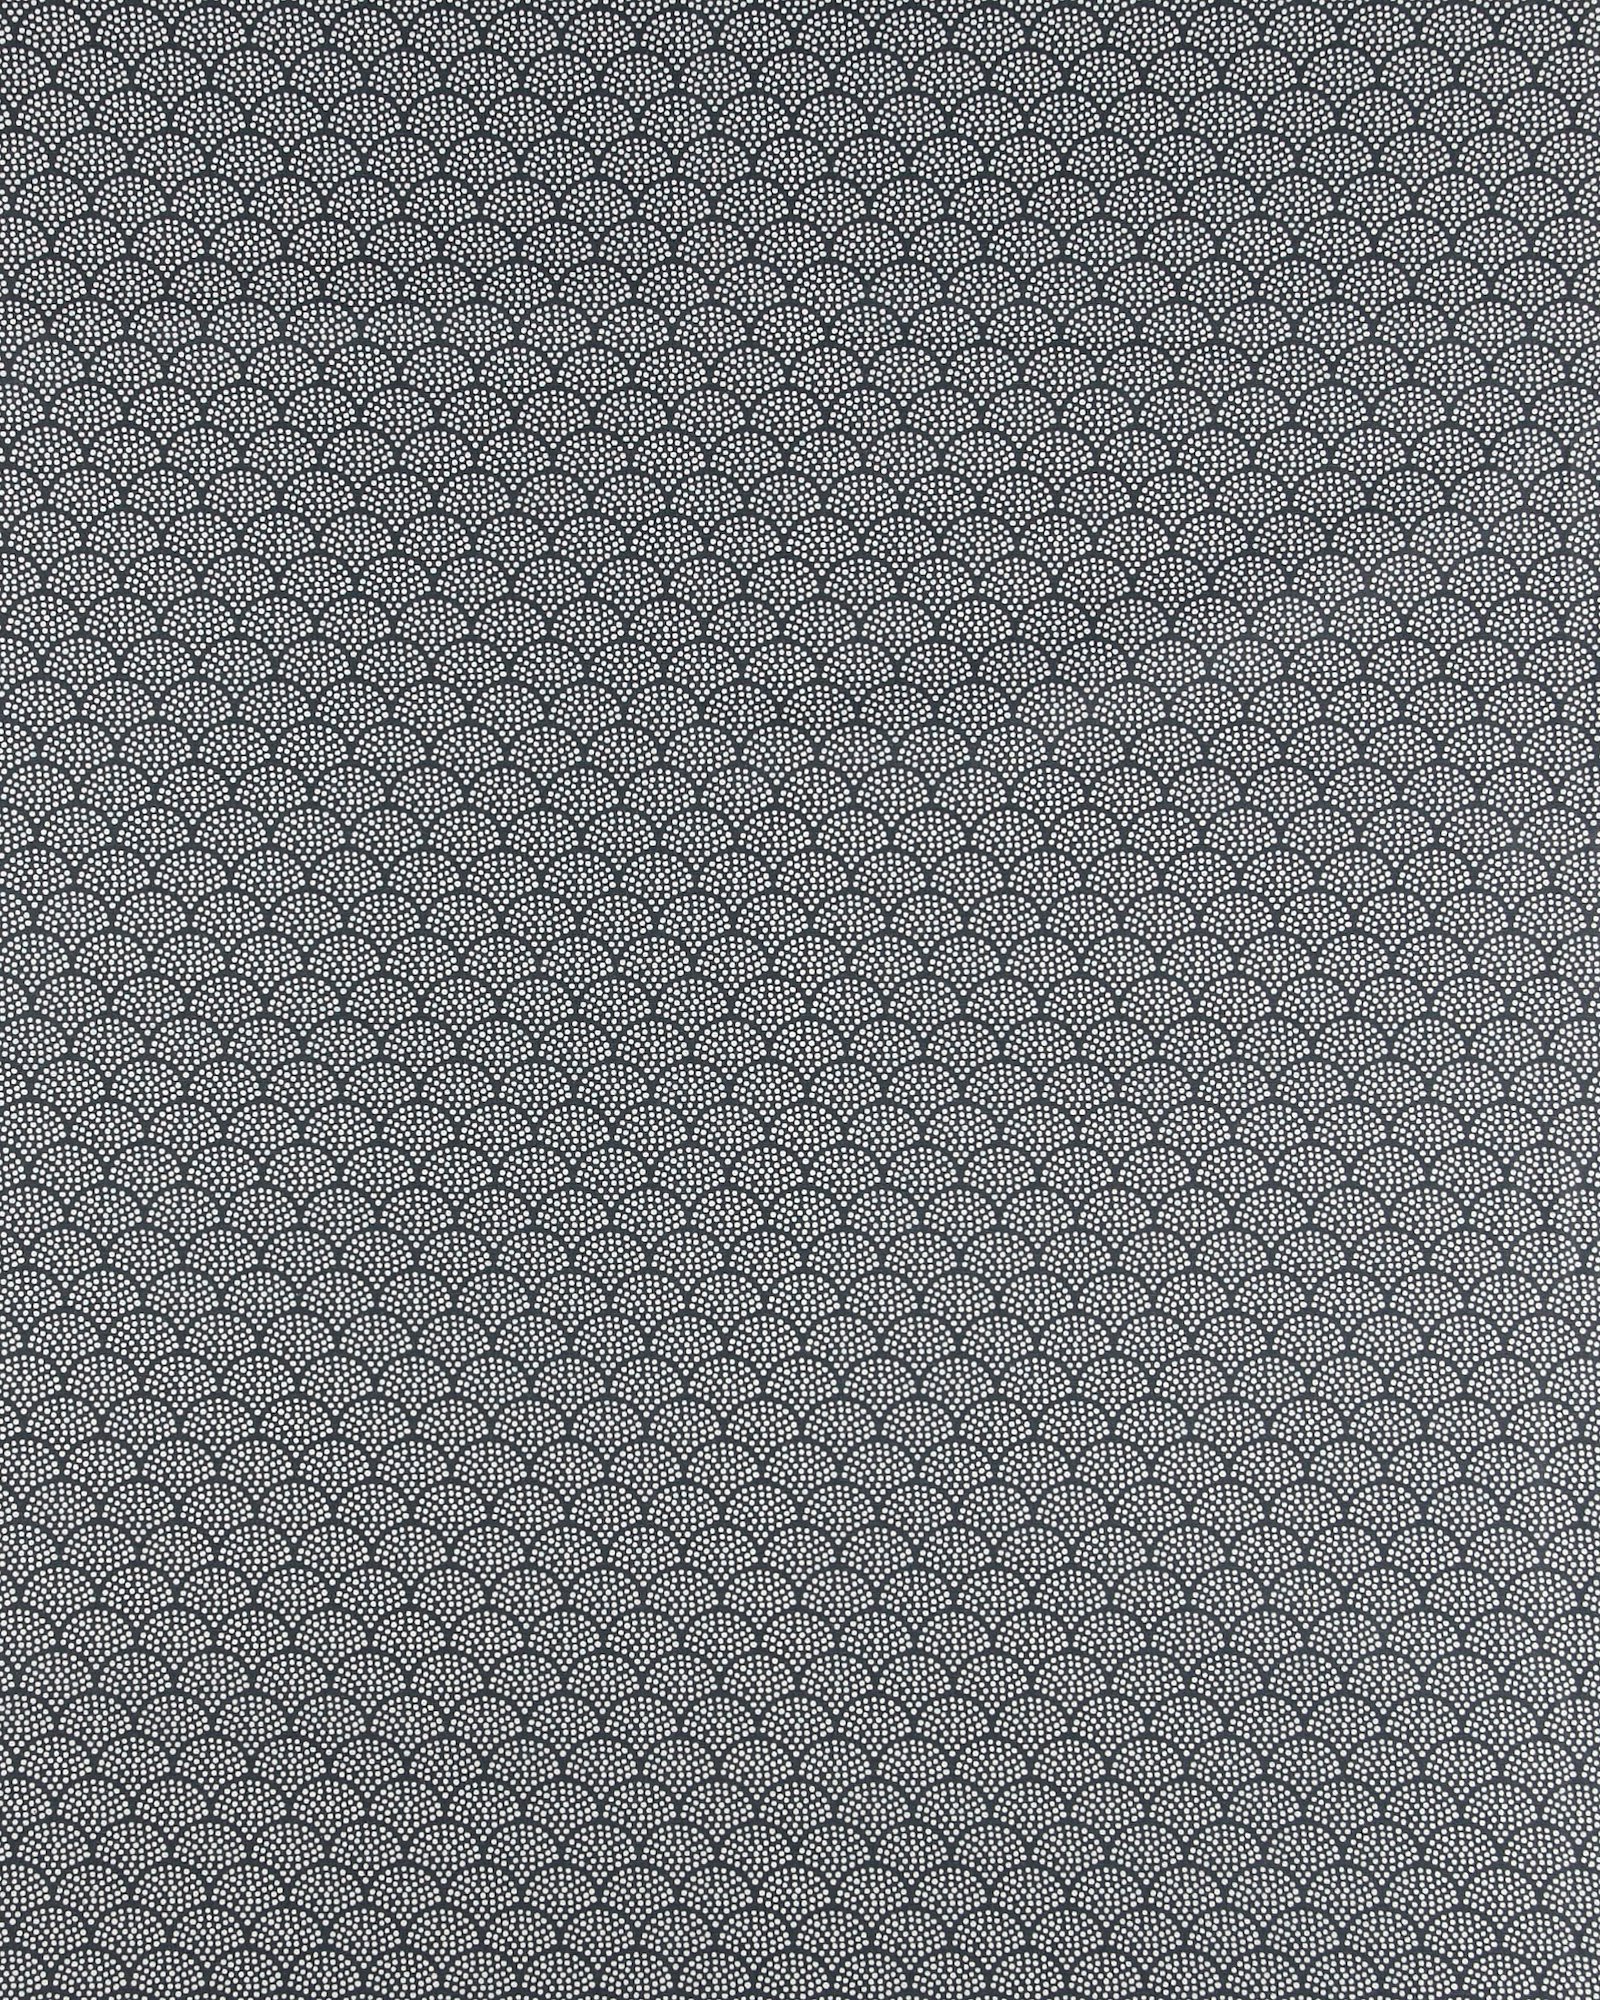 Tekstilvoksduk m mørke grå/hvite buer 870344_pack_sp